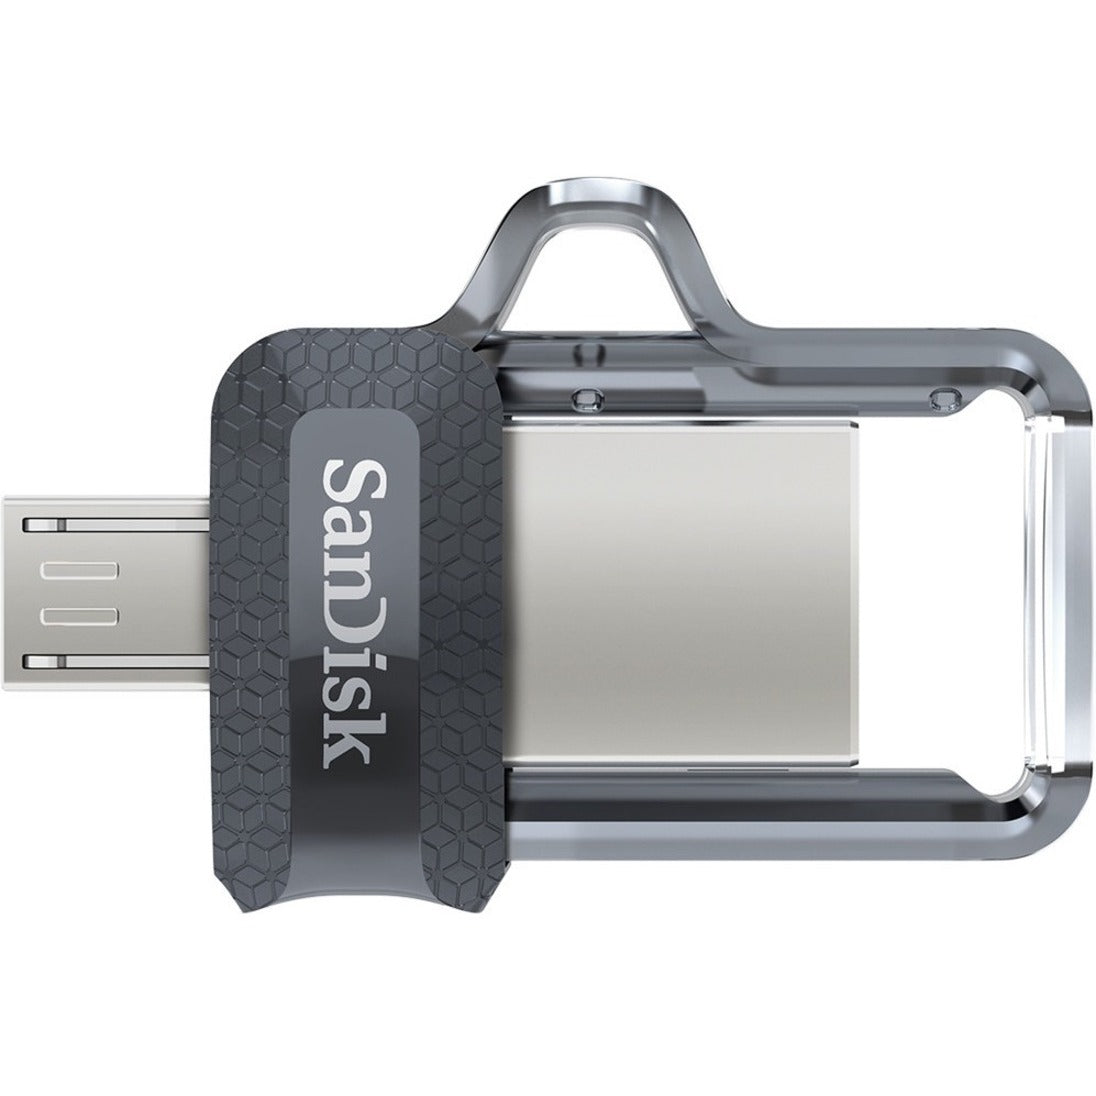 SanDisk SDDD3-064G-A46 Ultra Dual Drive m3.0 - 64GB, USB 3.0 Flash Drive